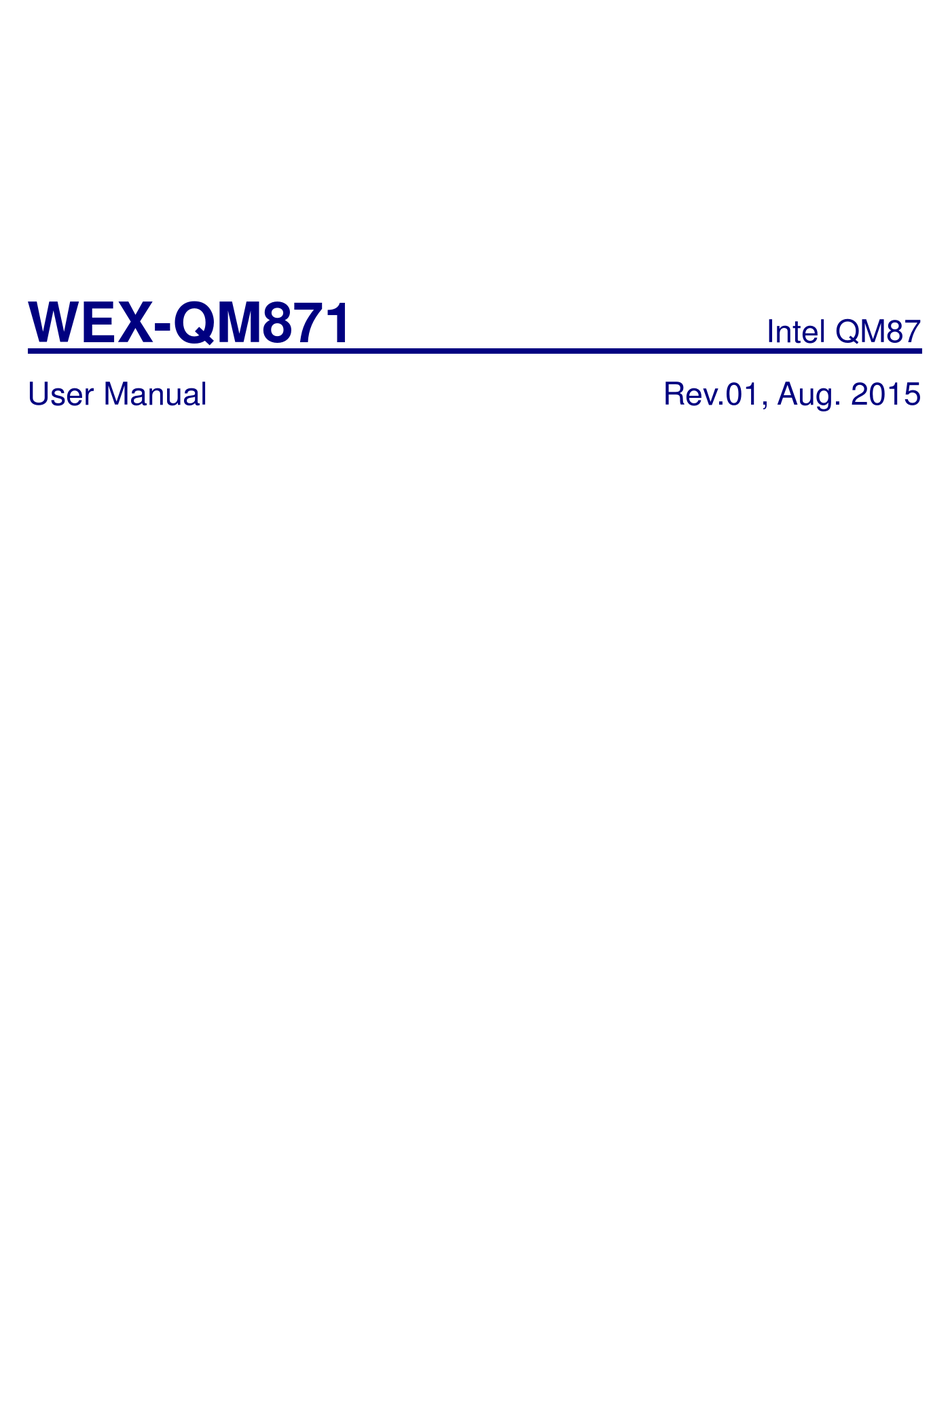 CJB WEXQM871 USER MANUAL Pdf Download ManualsLib